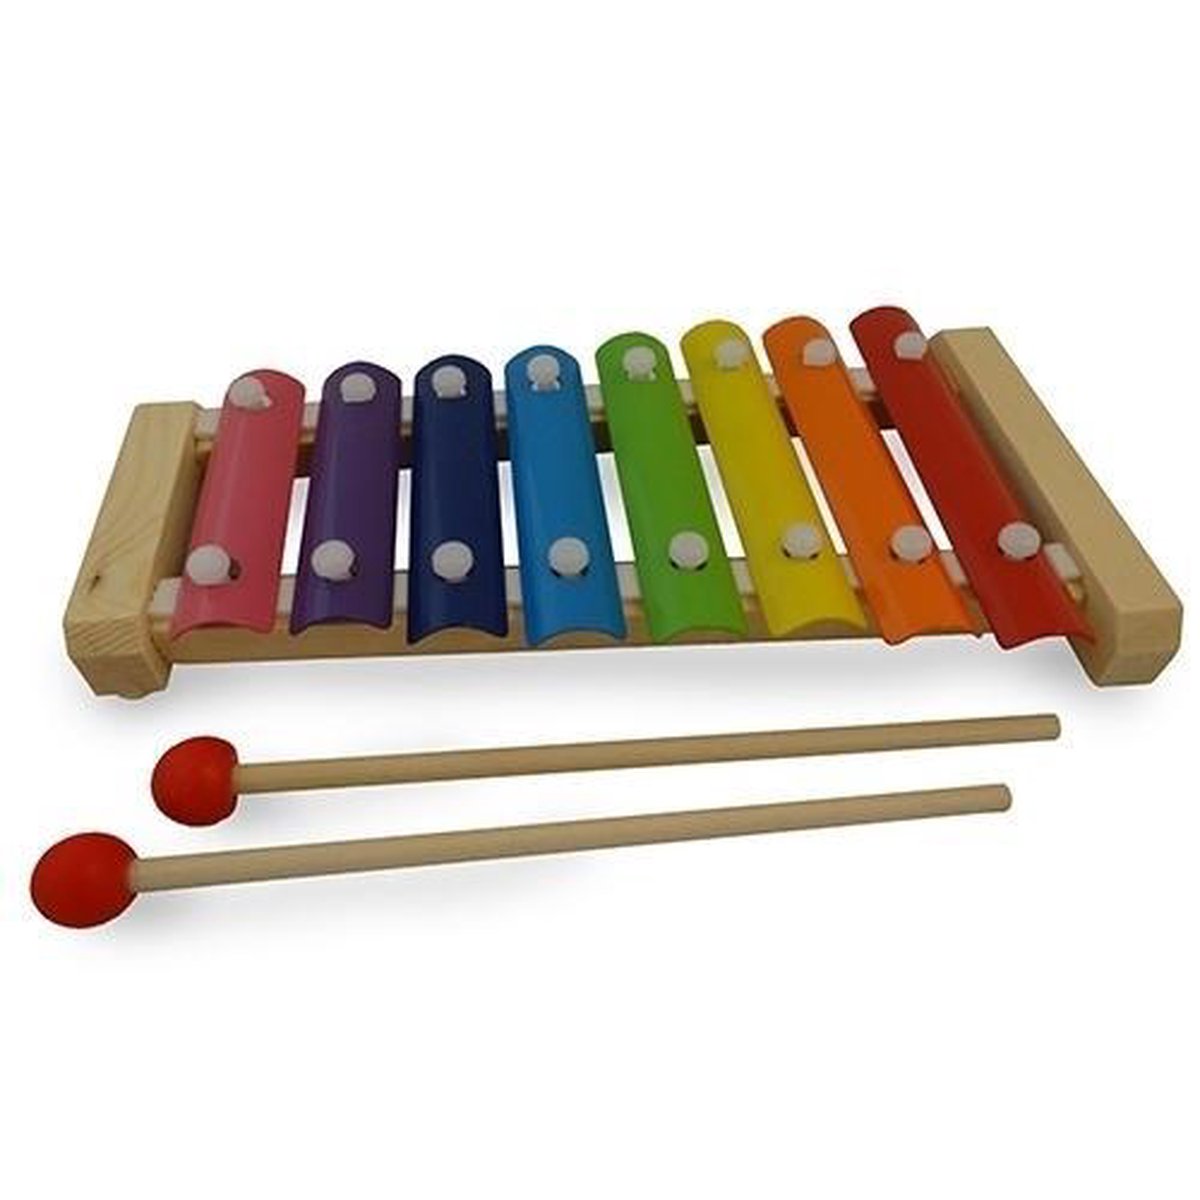 Metalofoon xylofoon 8 toons natural; hout met metalen toetsen in regenboogkleuren - Playwood